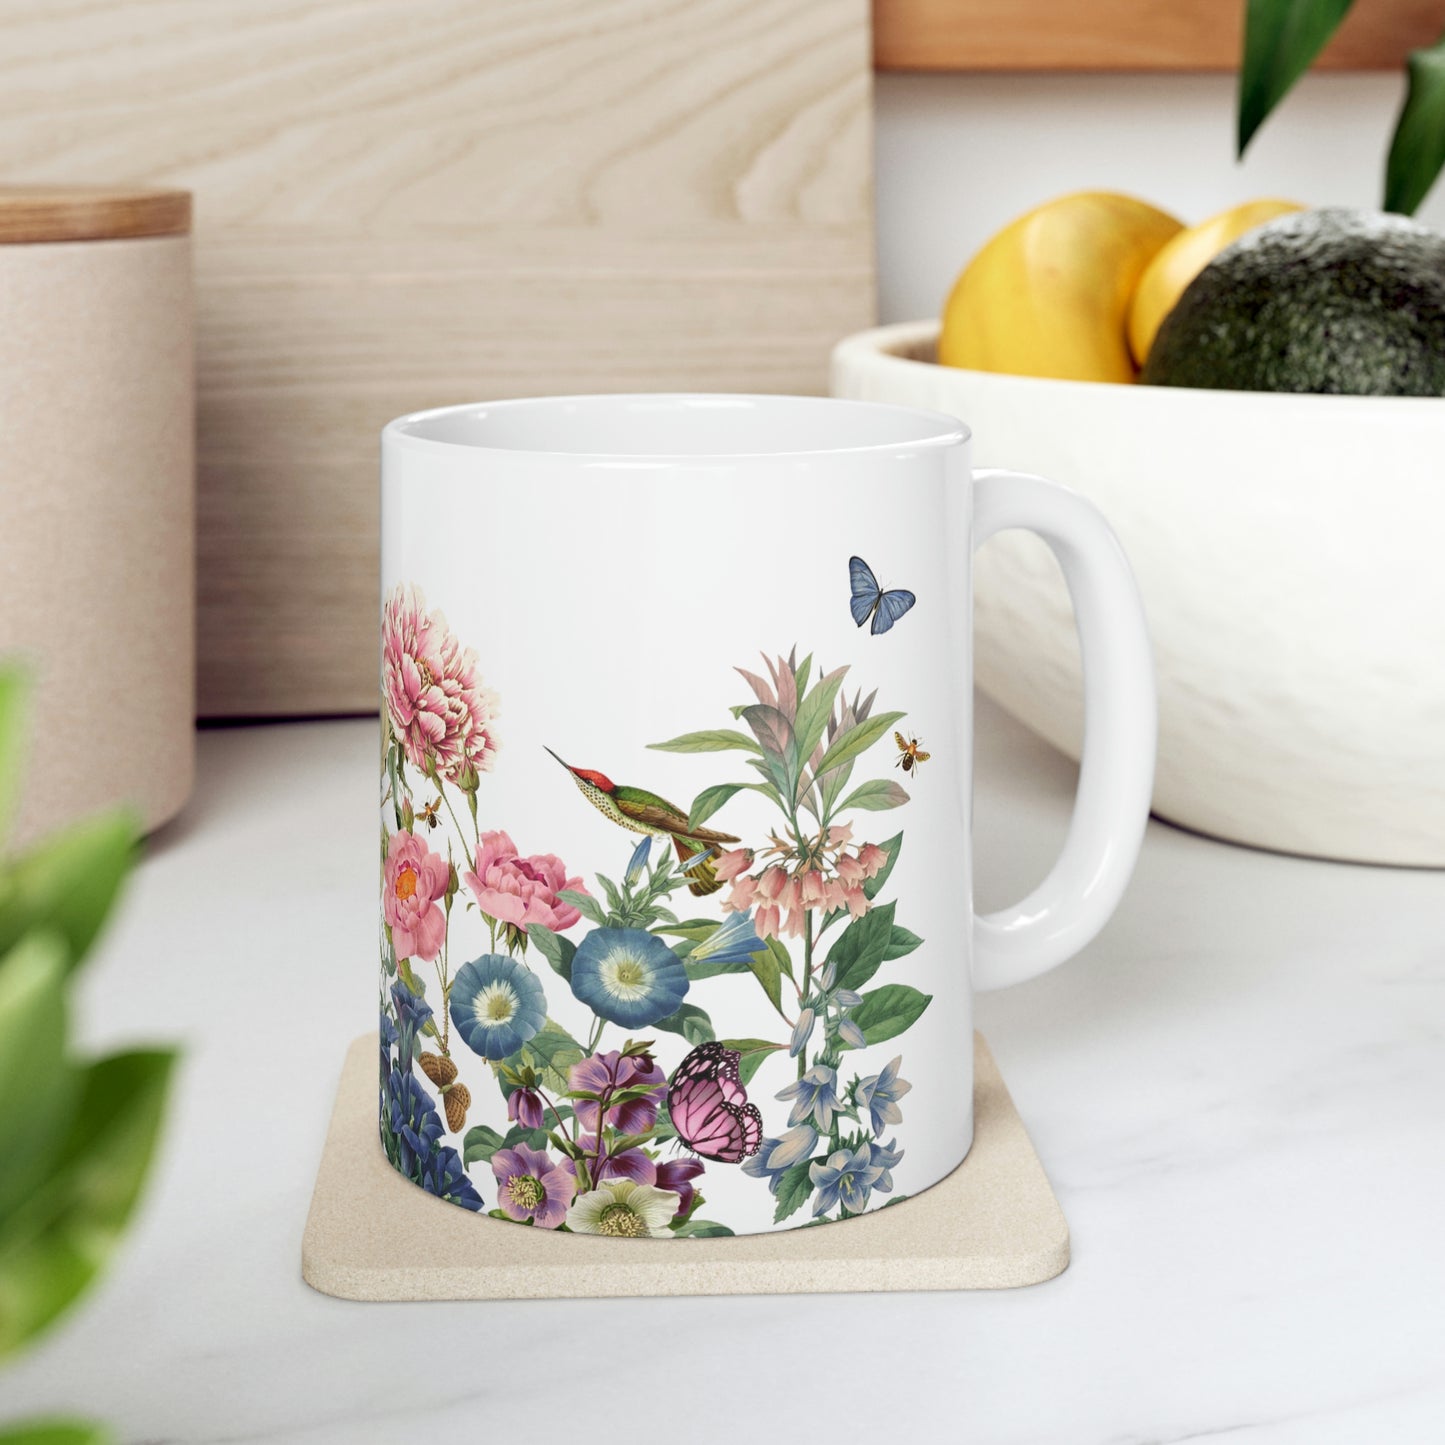 All Flowers, Birds, Butterflies, Bees Ceramic Mug 11oz